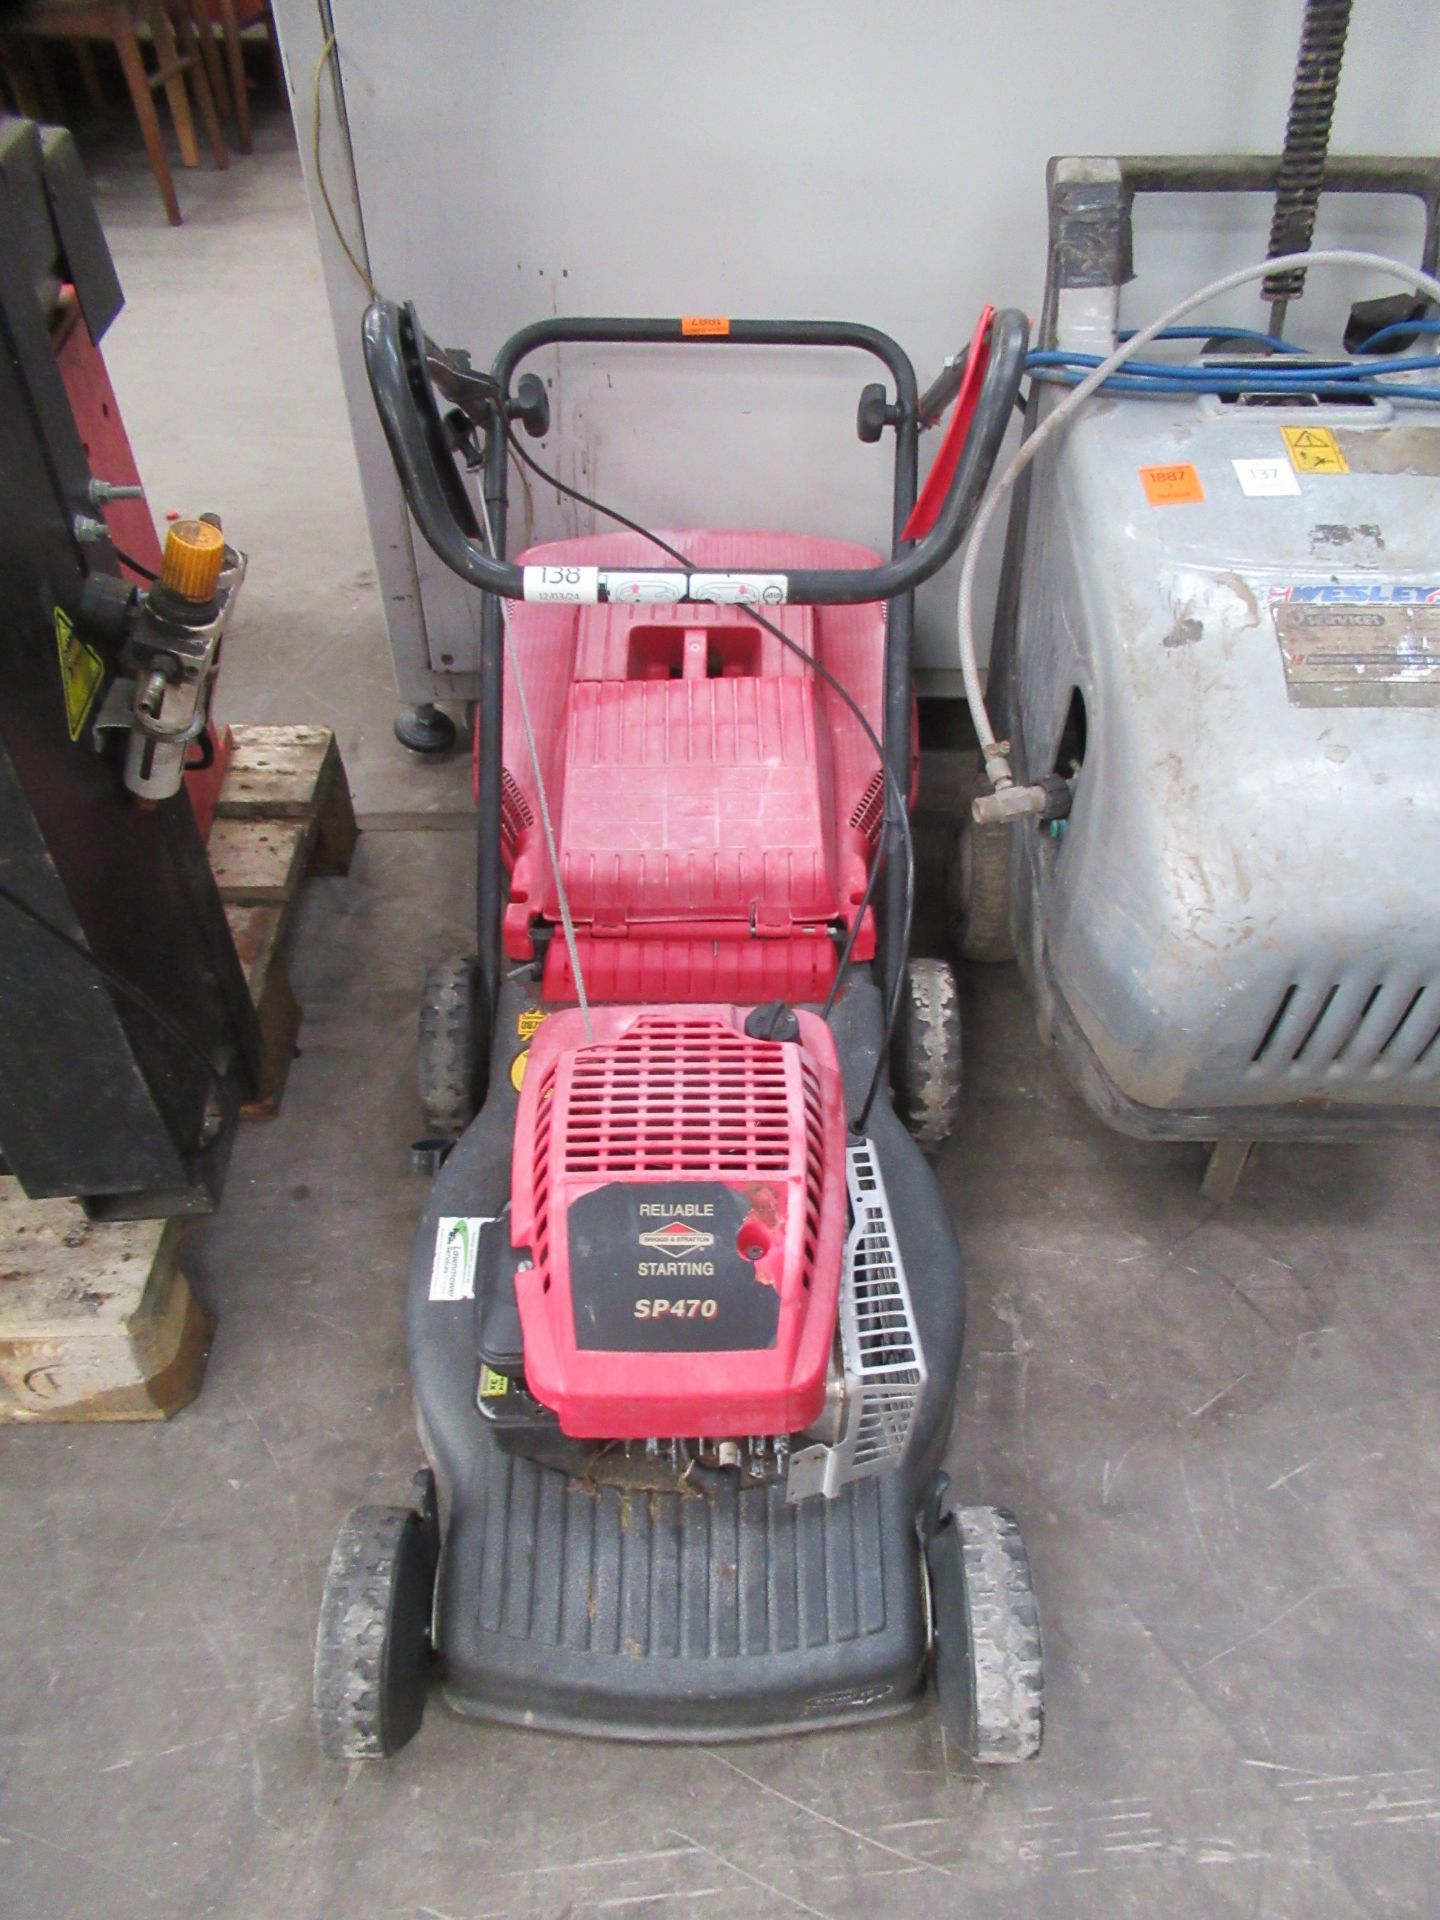 17" Petrol Powered Lawnmower - spares/repairs